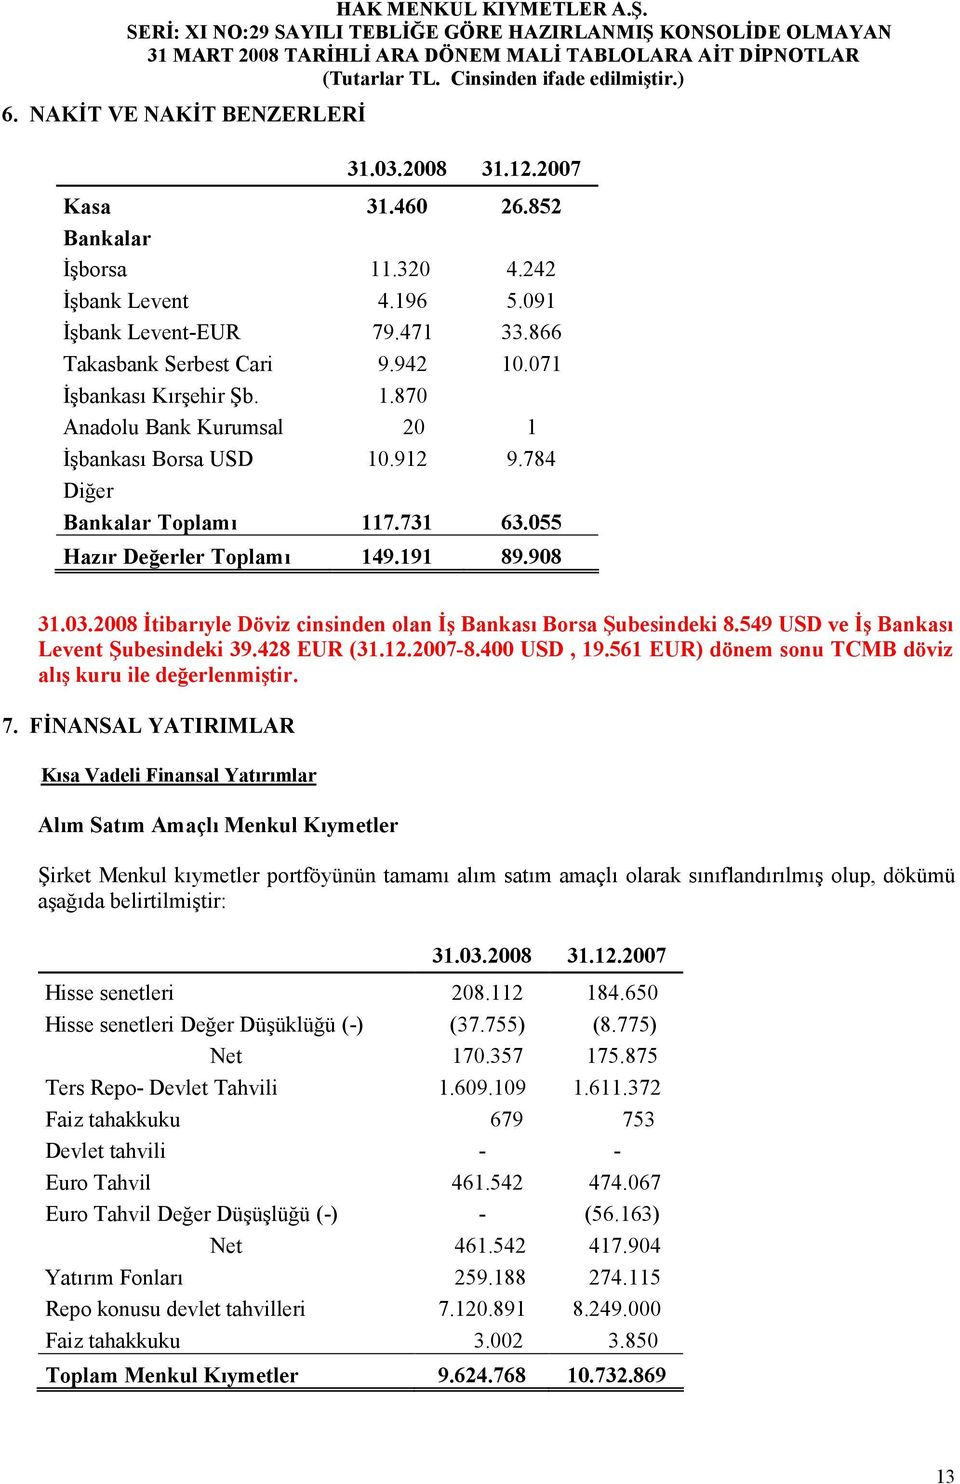 908 Đtibarıyle Döviz cinsinden olan Đş Bankası Borsa Şubesindeki 8.549 USD ve Đş Bankası Levent Şubesindeki 39.428 EUR (31.12.2007-8.400 USD, 19.